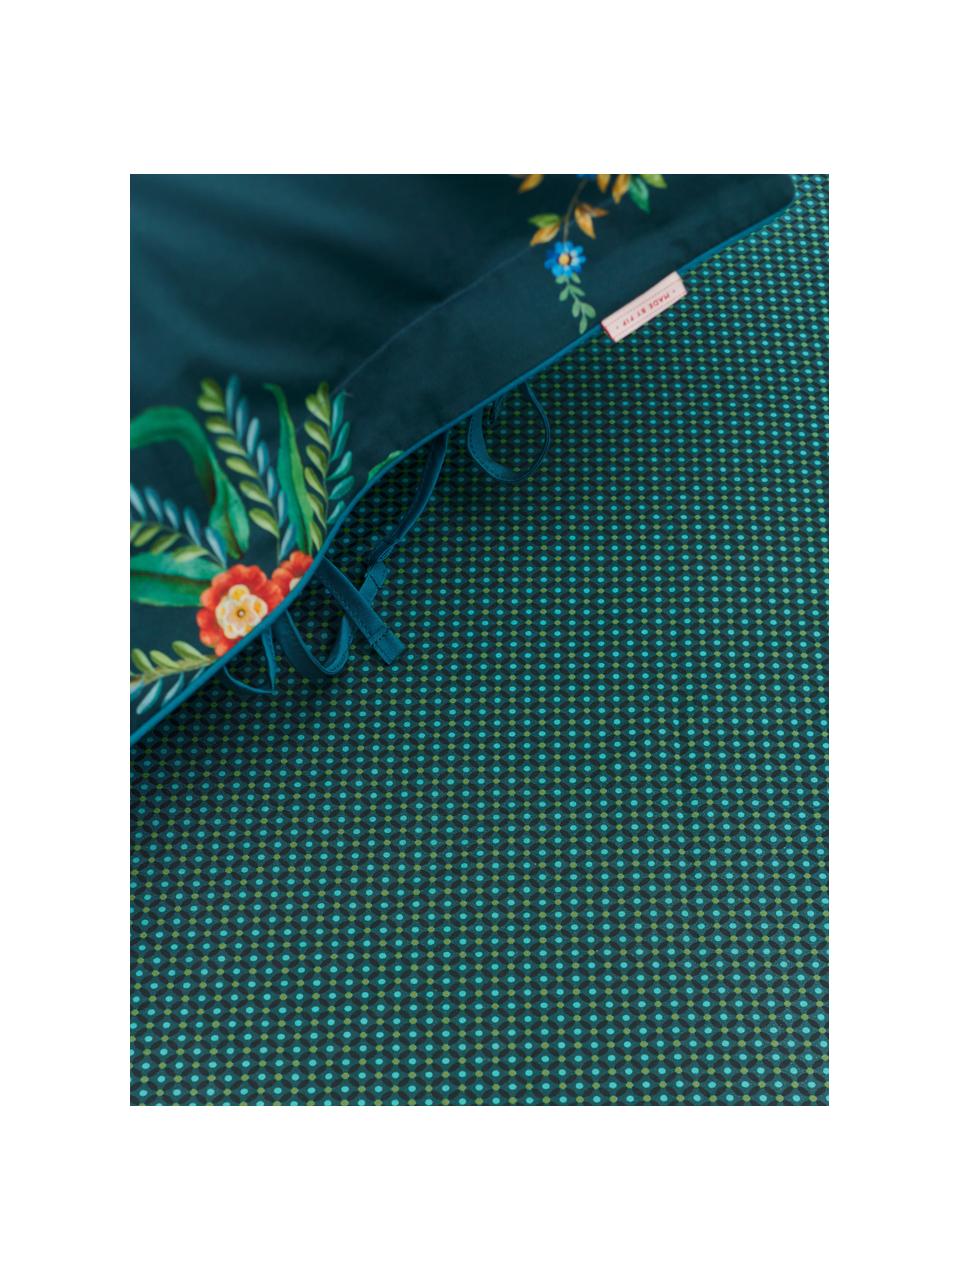 Fein gemustertes Baumwollperkal-Spannbettlaken Cross Stitch, Webart: Perkal Fadendichte 200 TC, Dunkelgrün, Grün, Blau, 90 x 200 cm